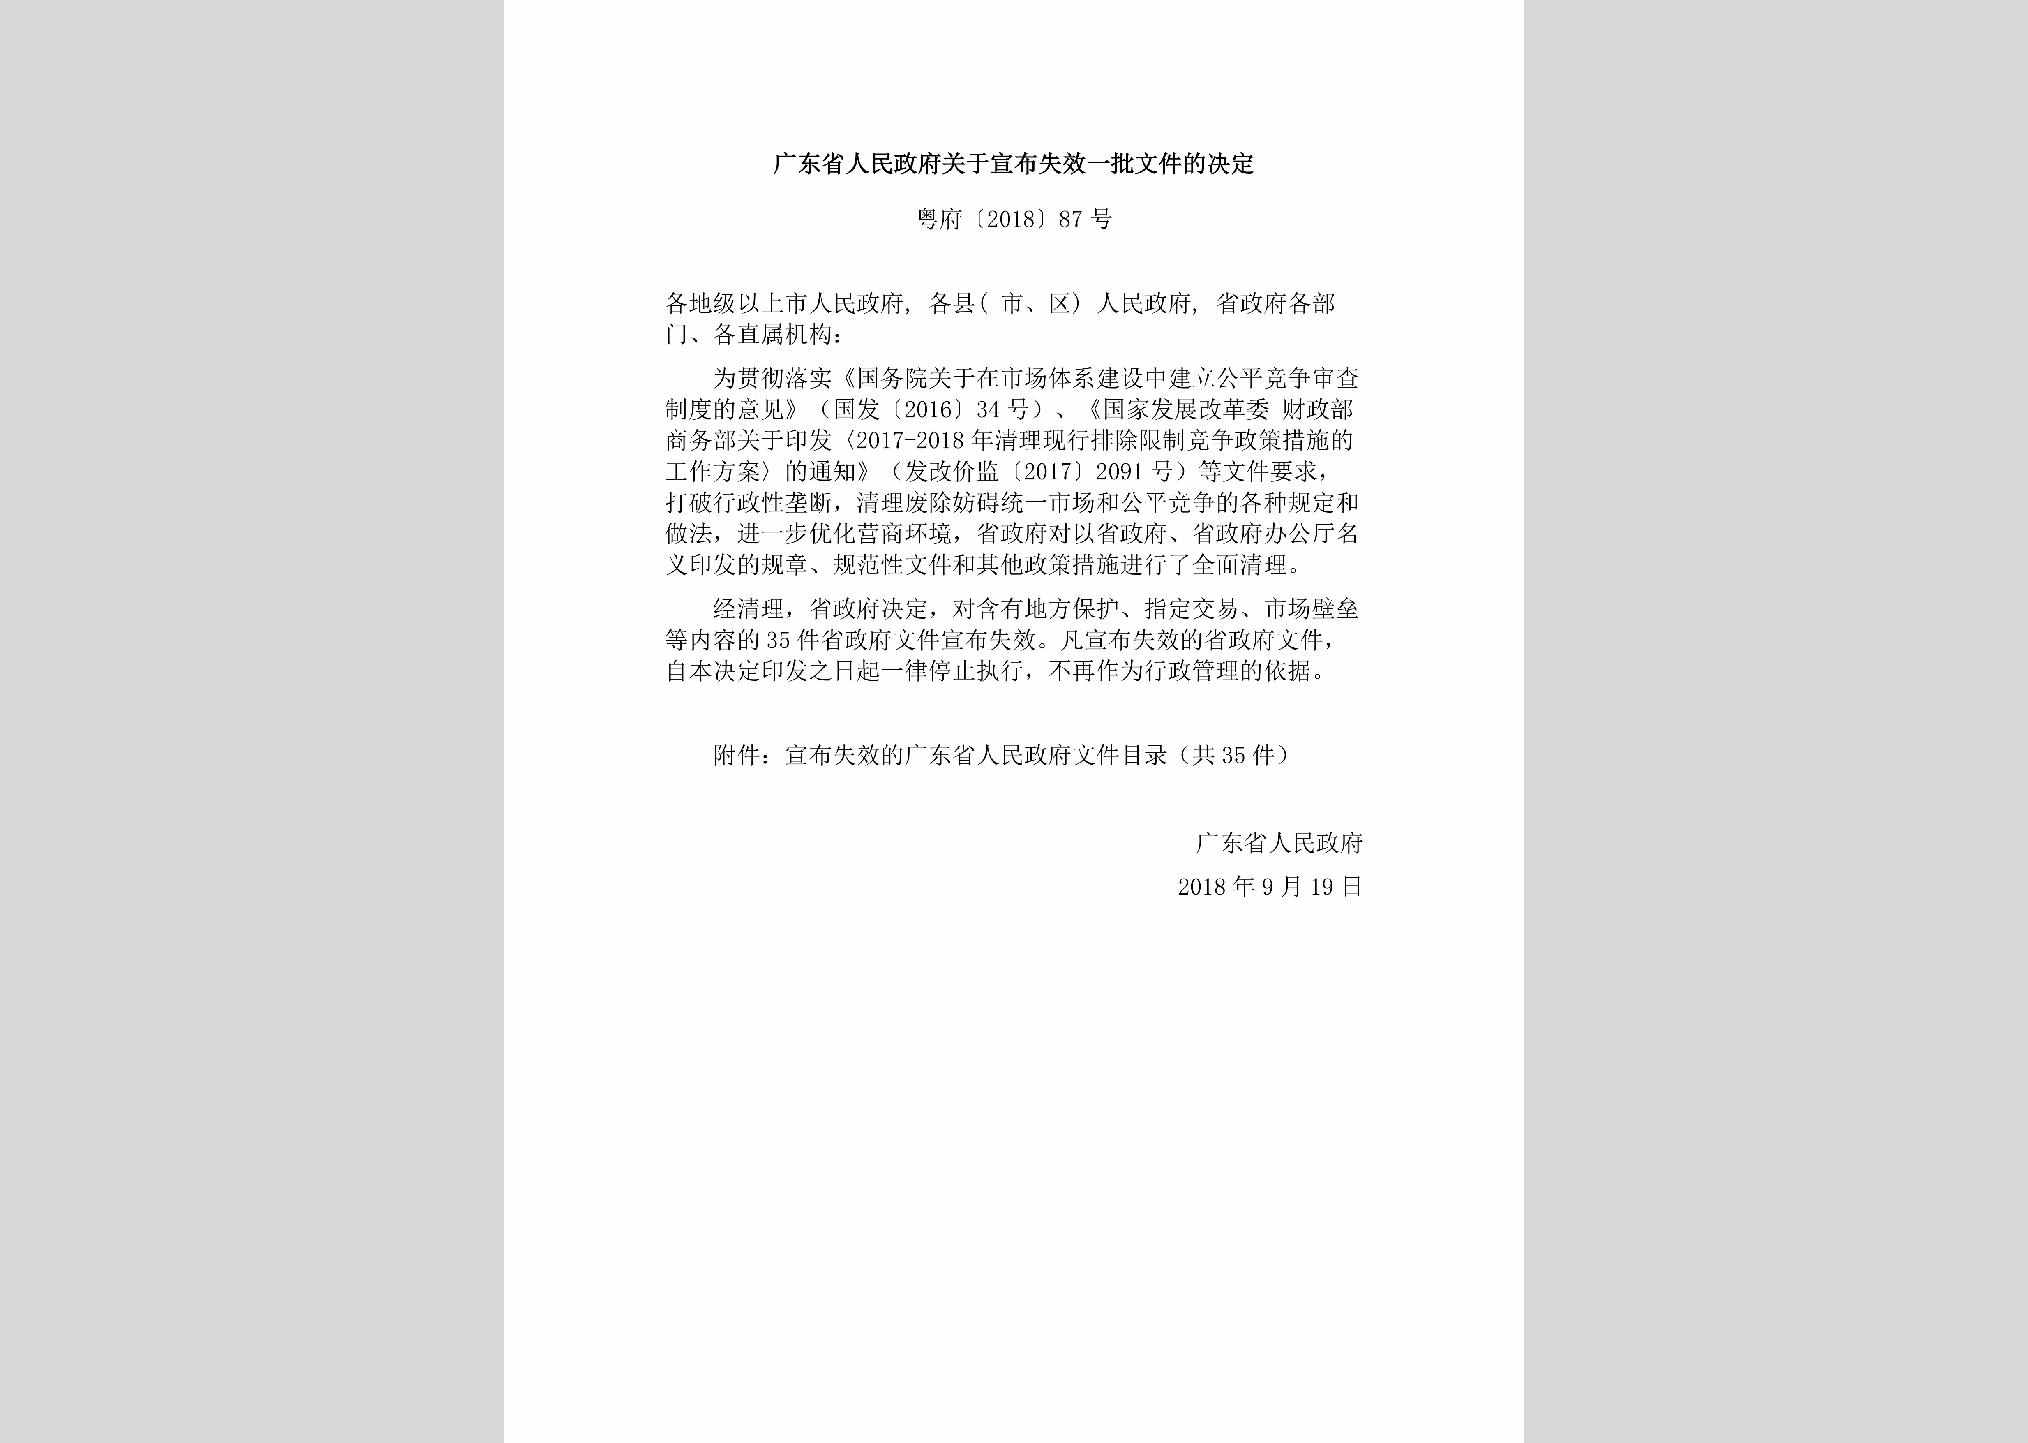 粤府[2018]87号：广东省人民政府关于宣布失效一批文件的决定